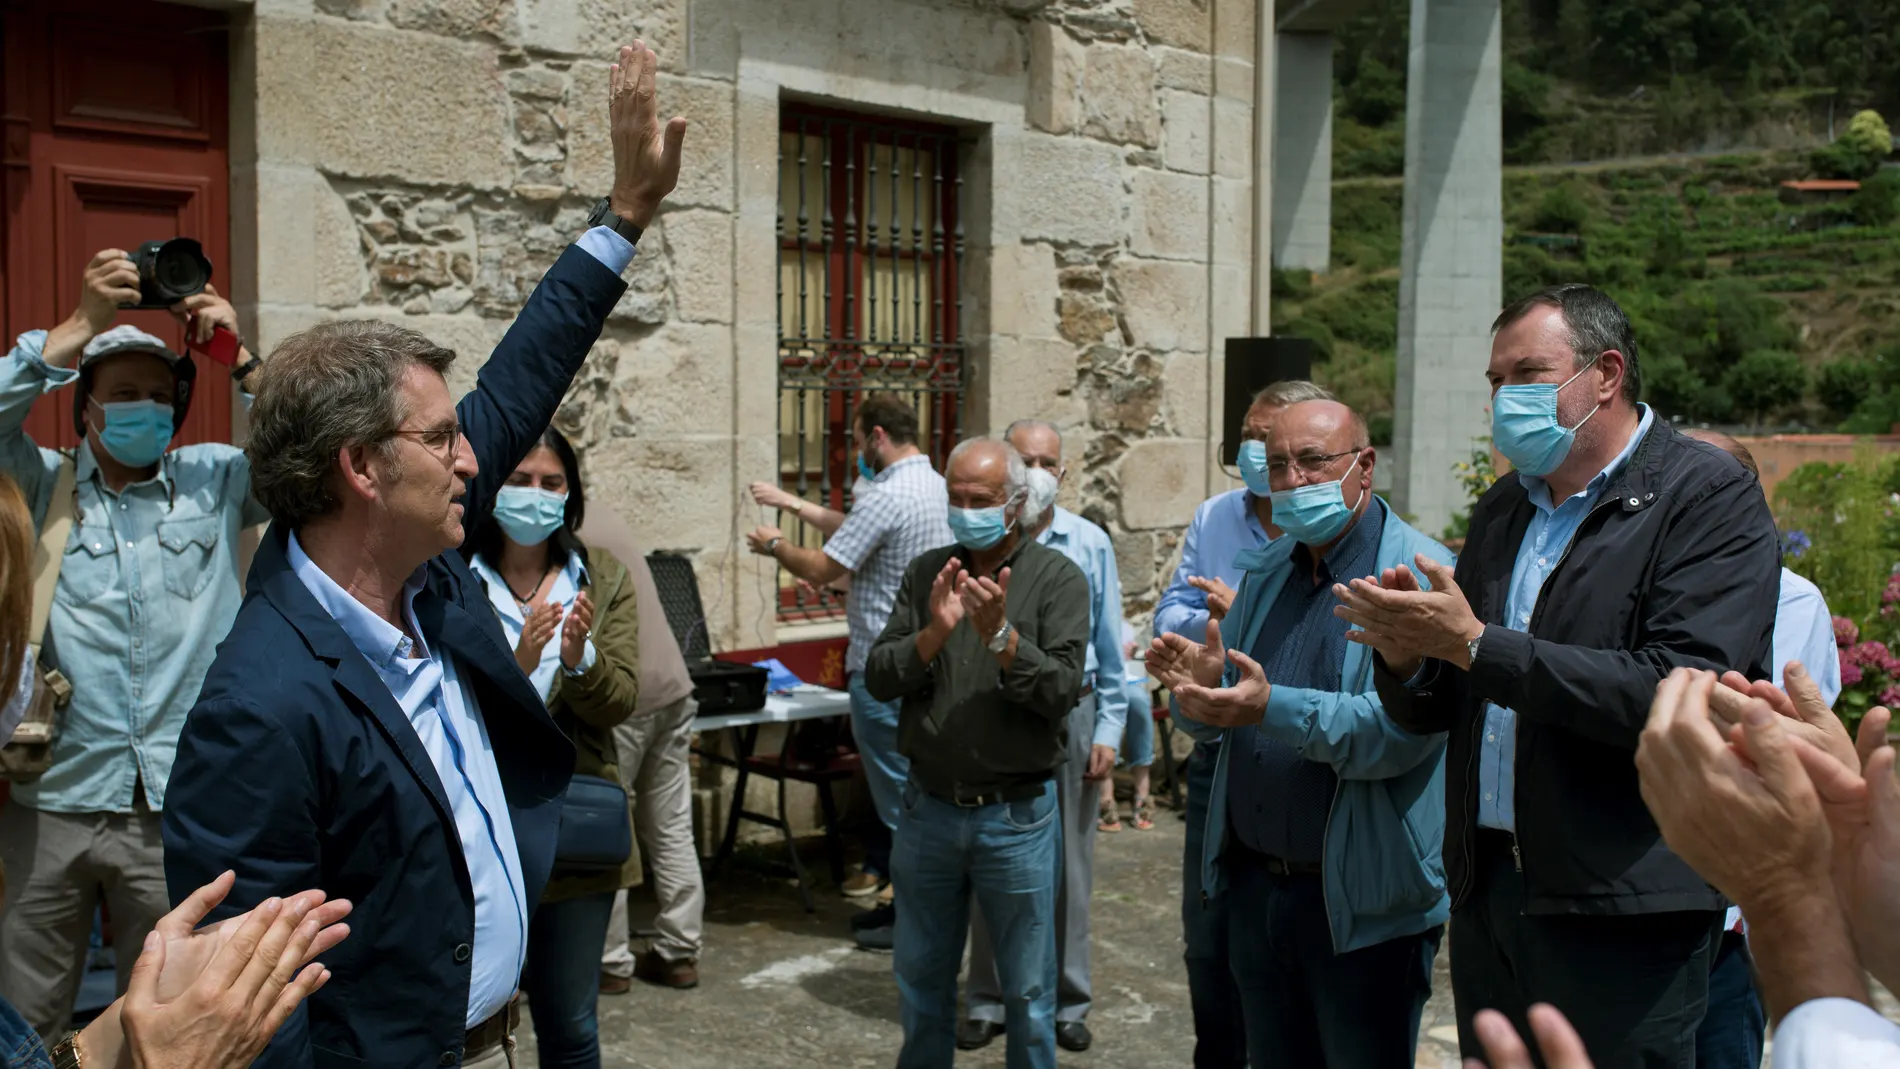 Feijóo inicia su agenda electoral en Os Peares, su localidad natal